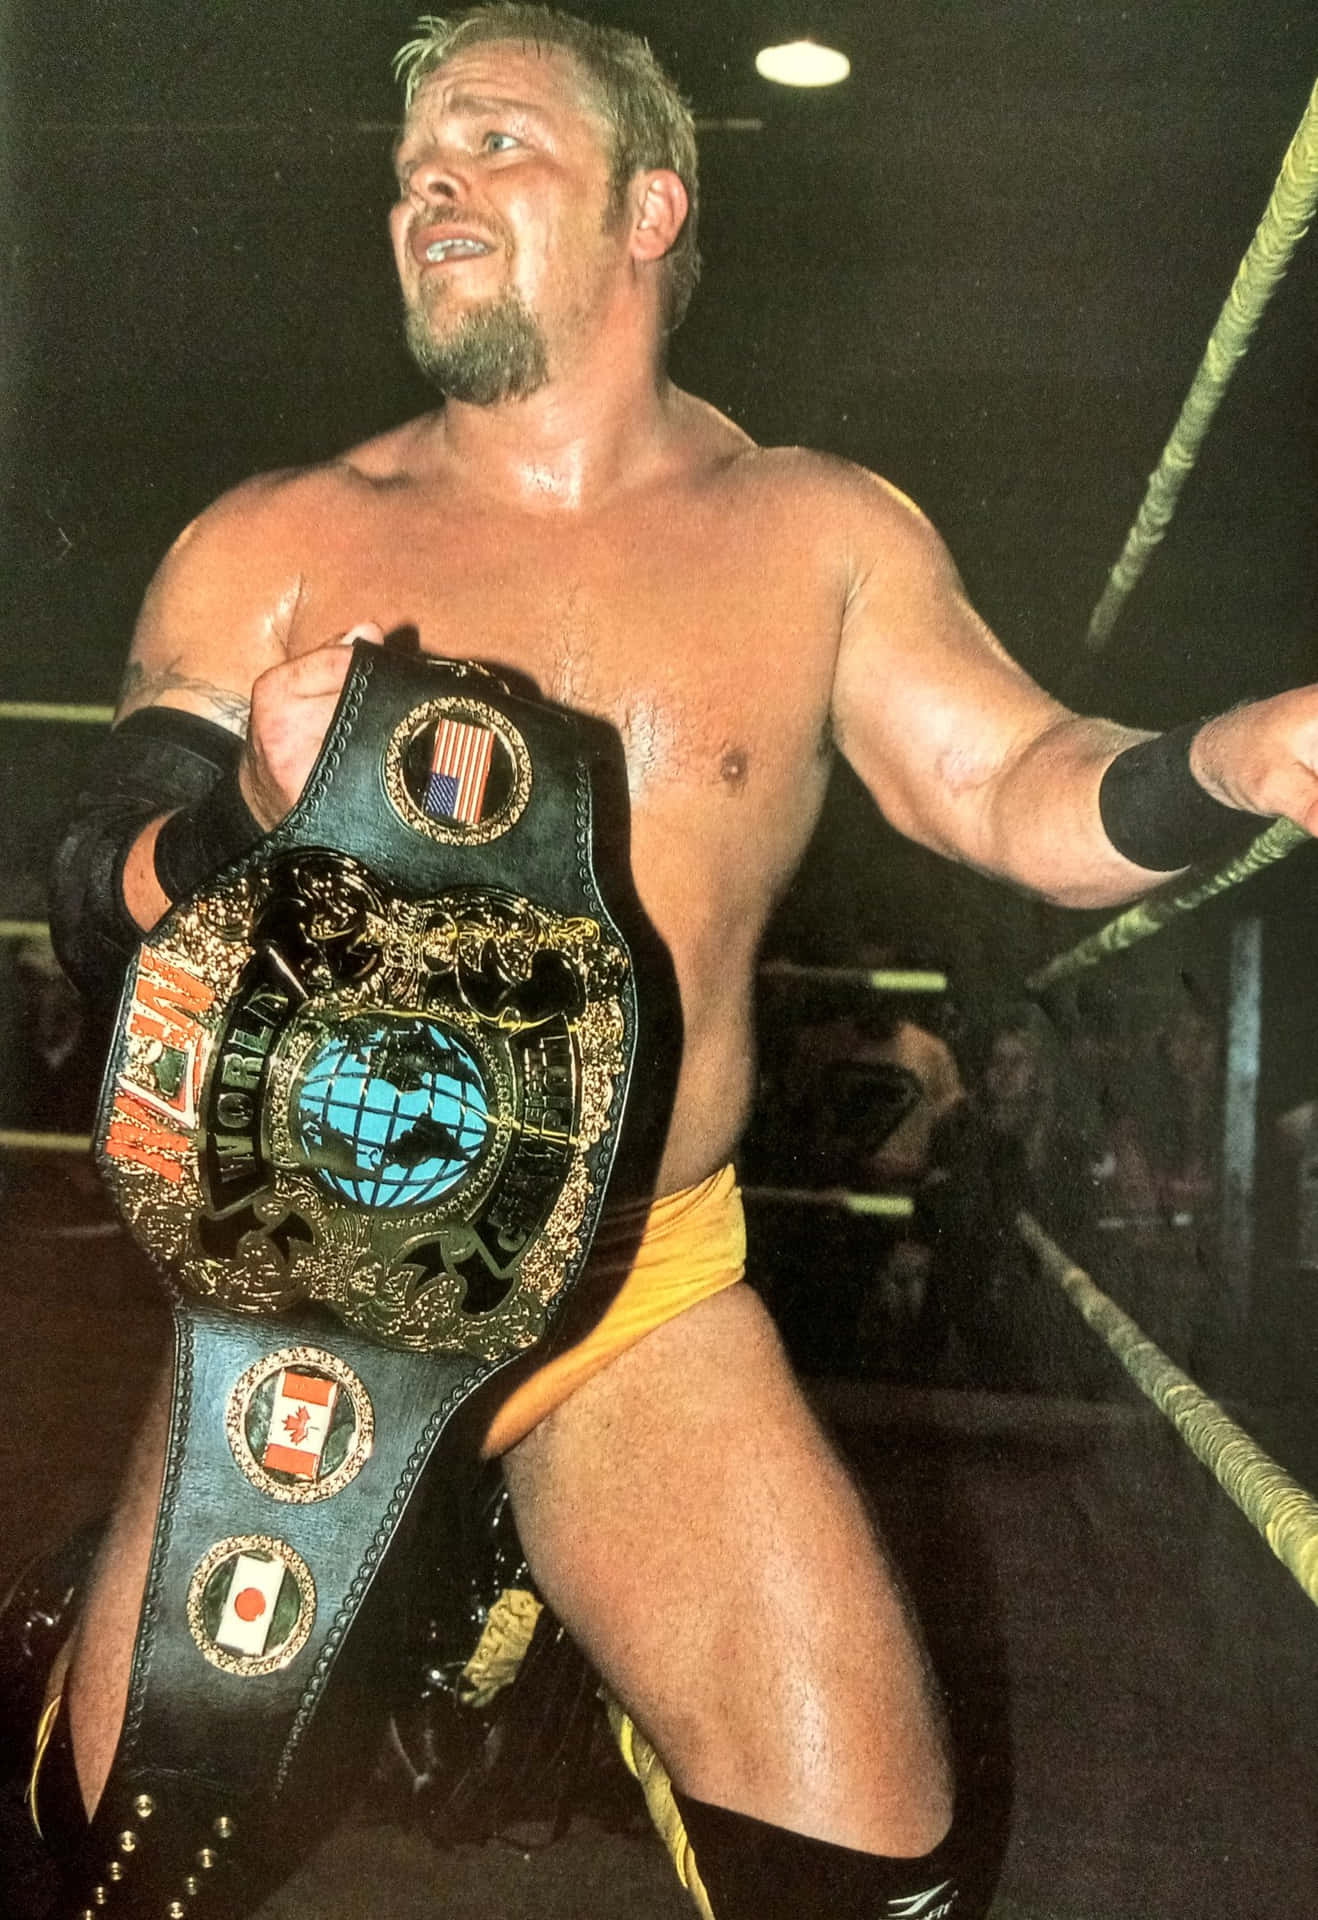 "American Wrestler Shane Douglas Holding Championship Belt" Wallpaper